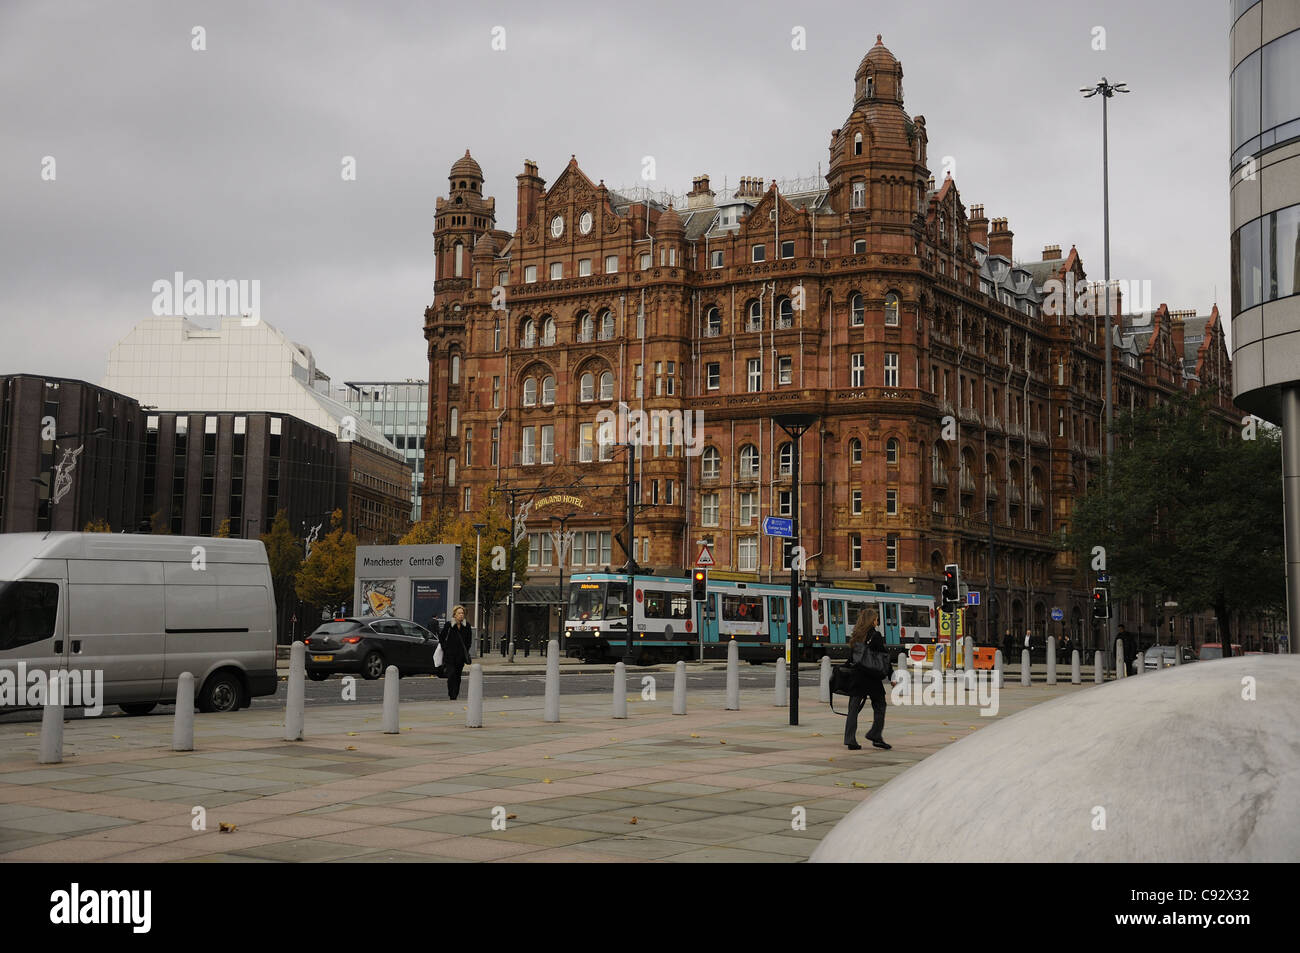 Decorado de amapola tranvía Metrolink delante del Midland Hotel Manchester Foto de stock